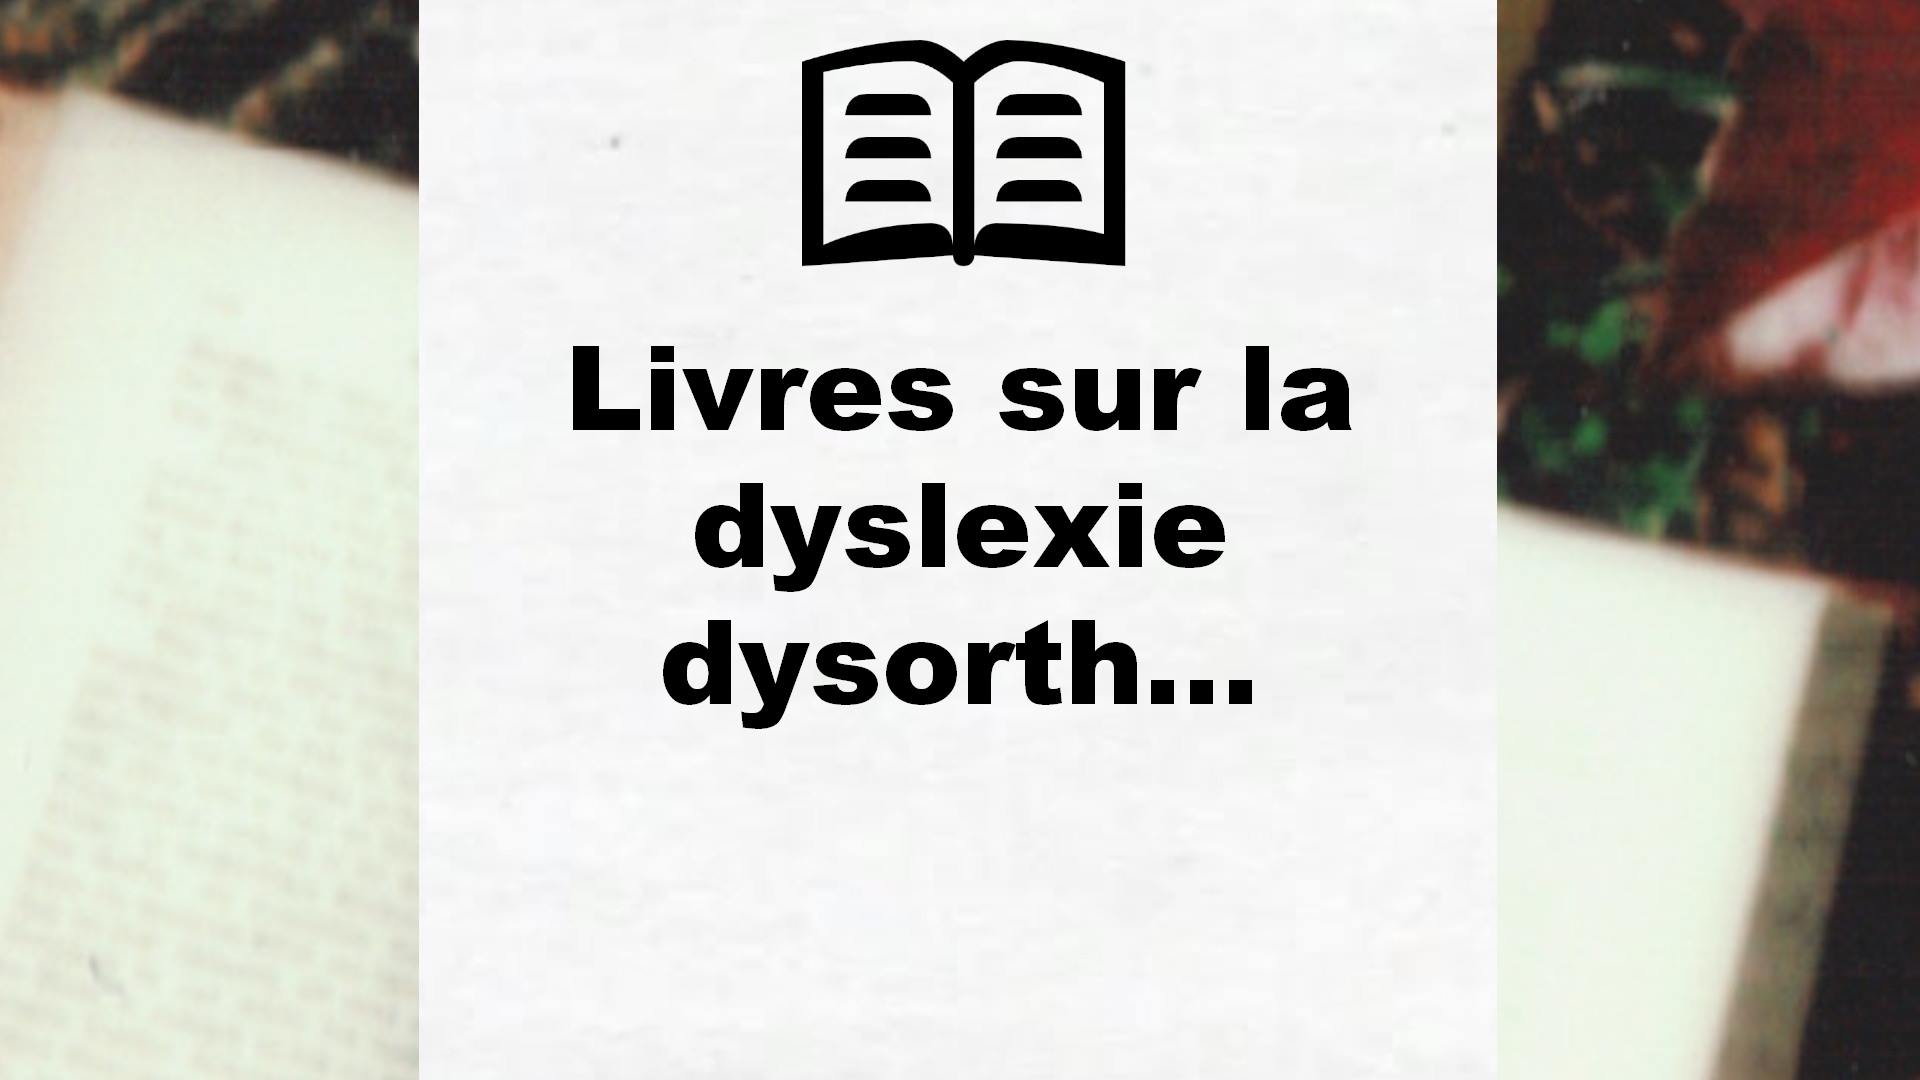 Livres sur la dyslexie dysorthographie